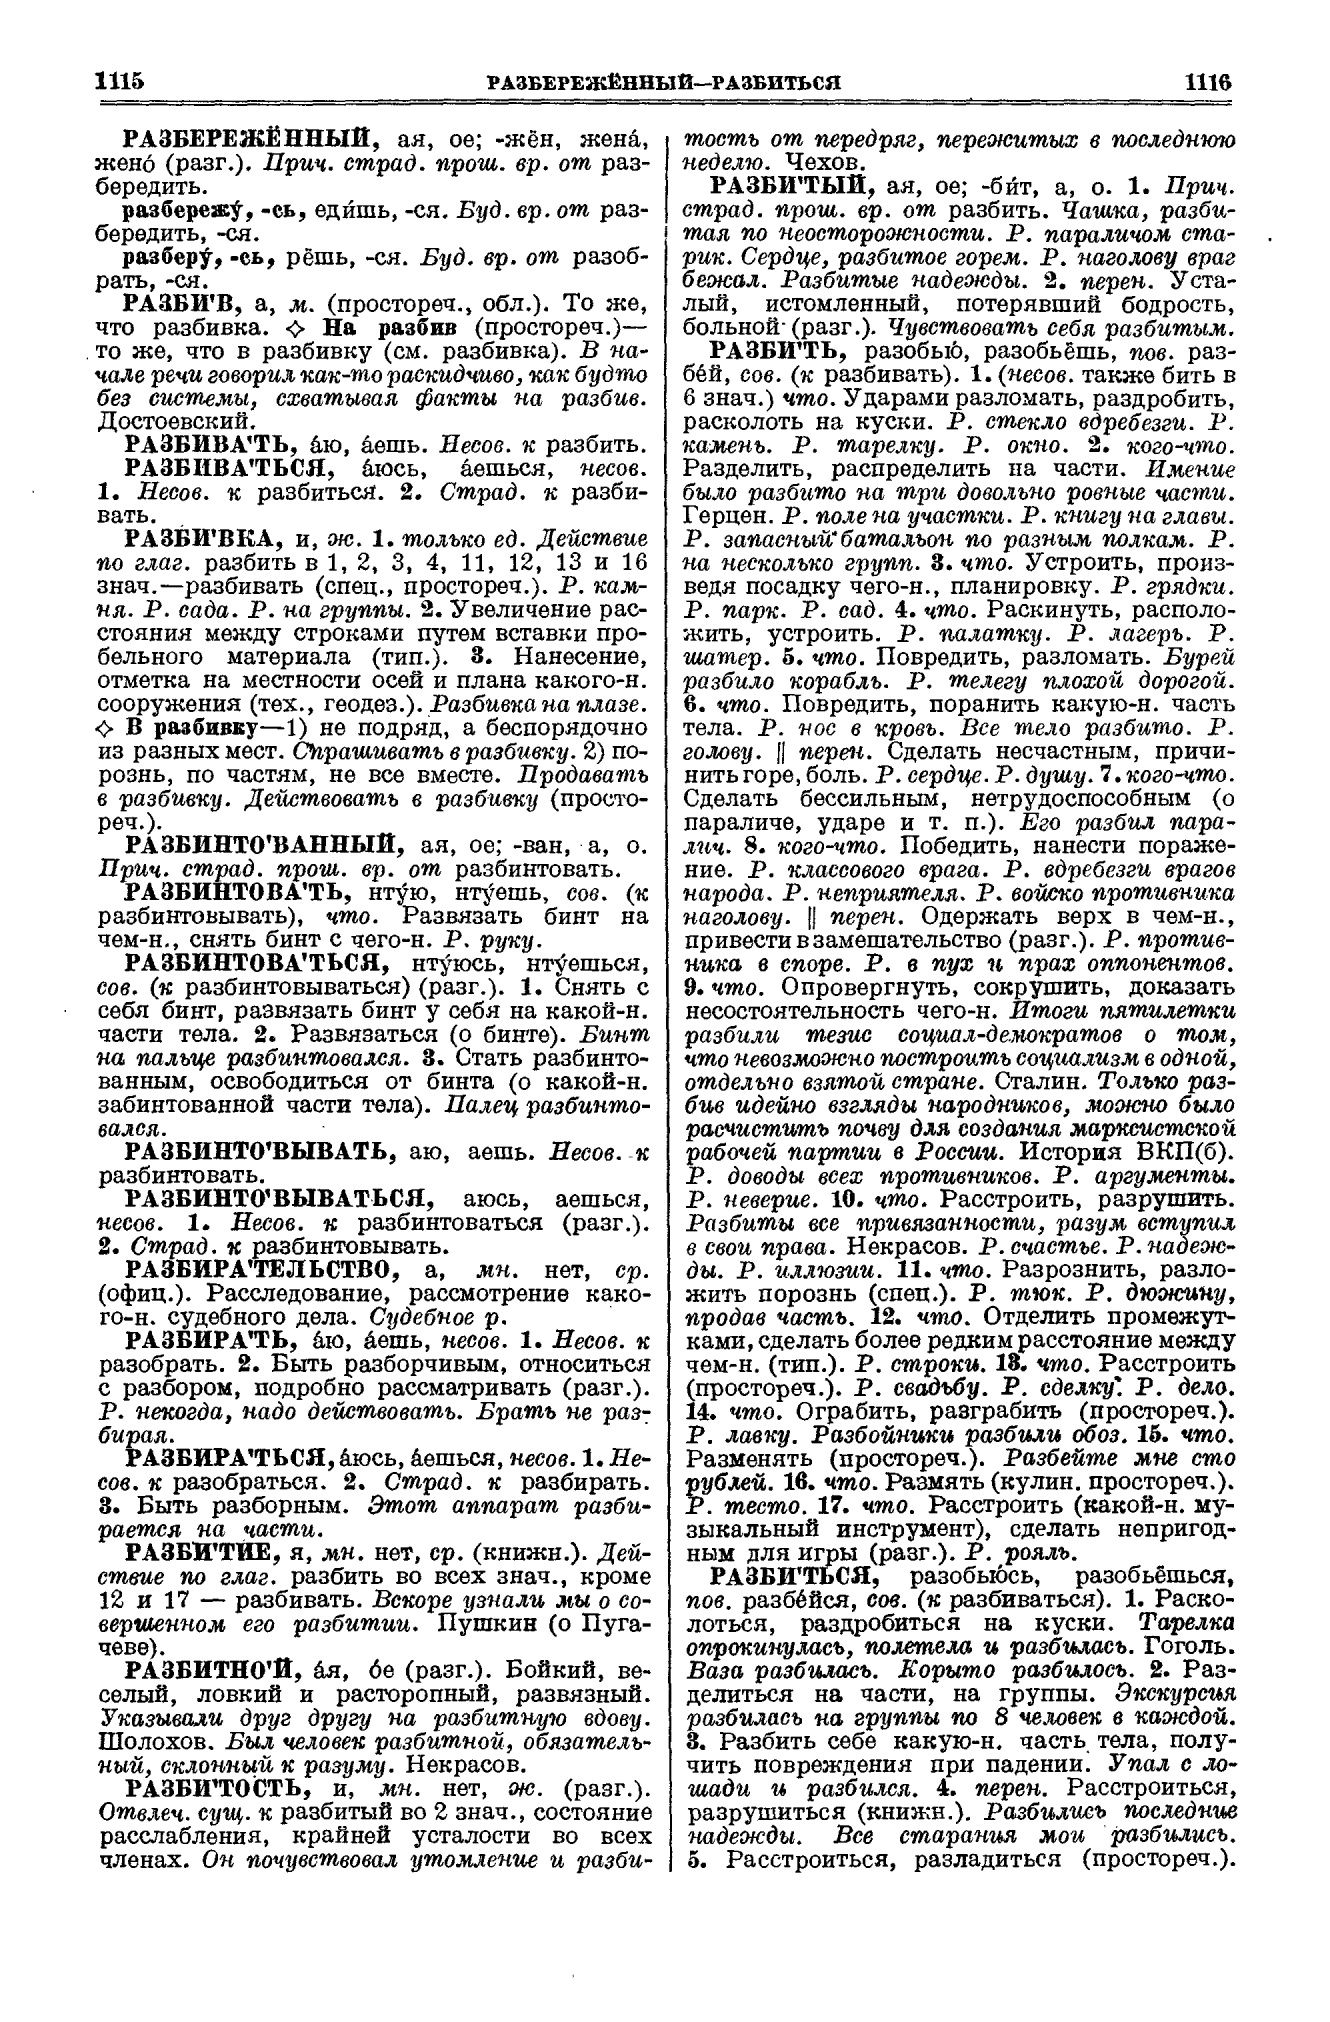 Фотокопия pdf / скан страницы 558 толкового словаря Ушакова (том 3)